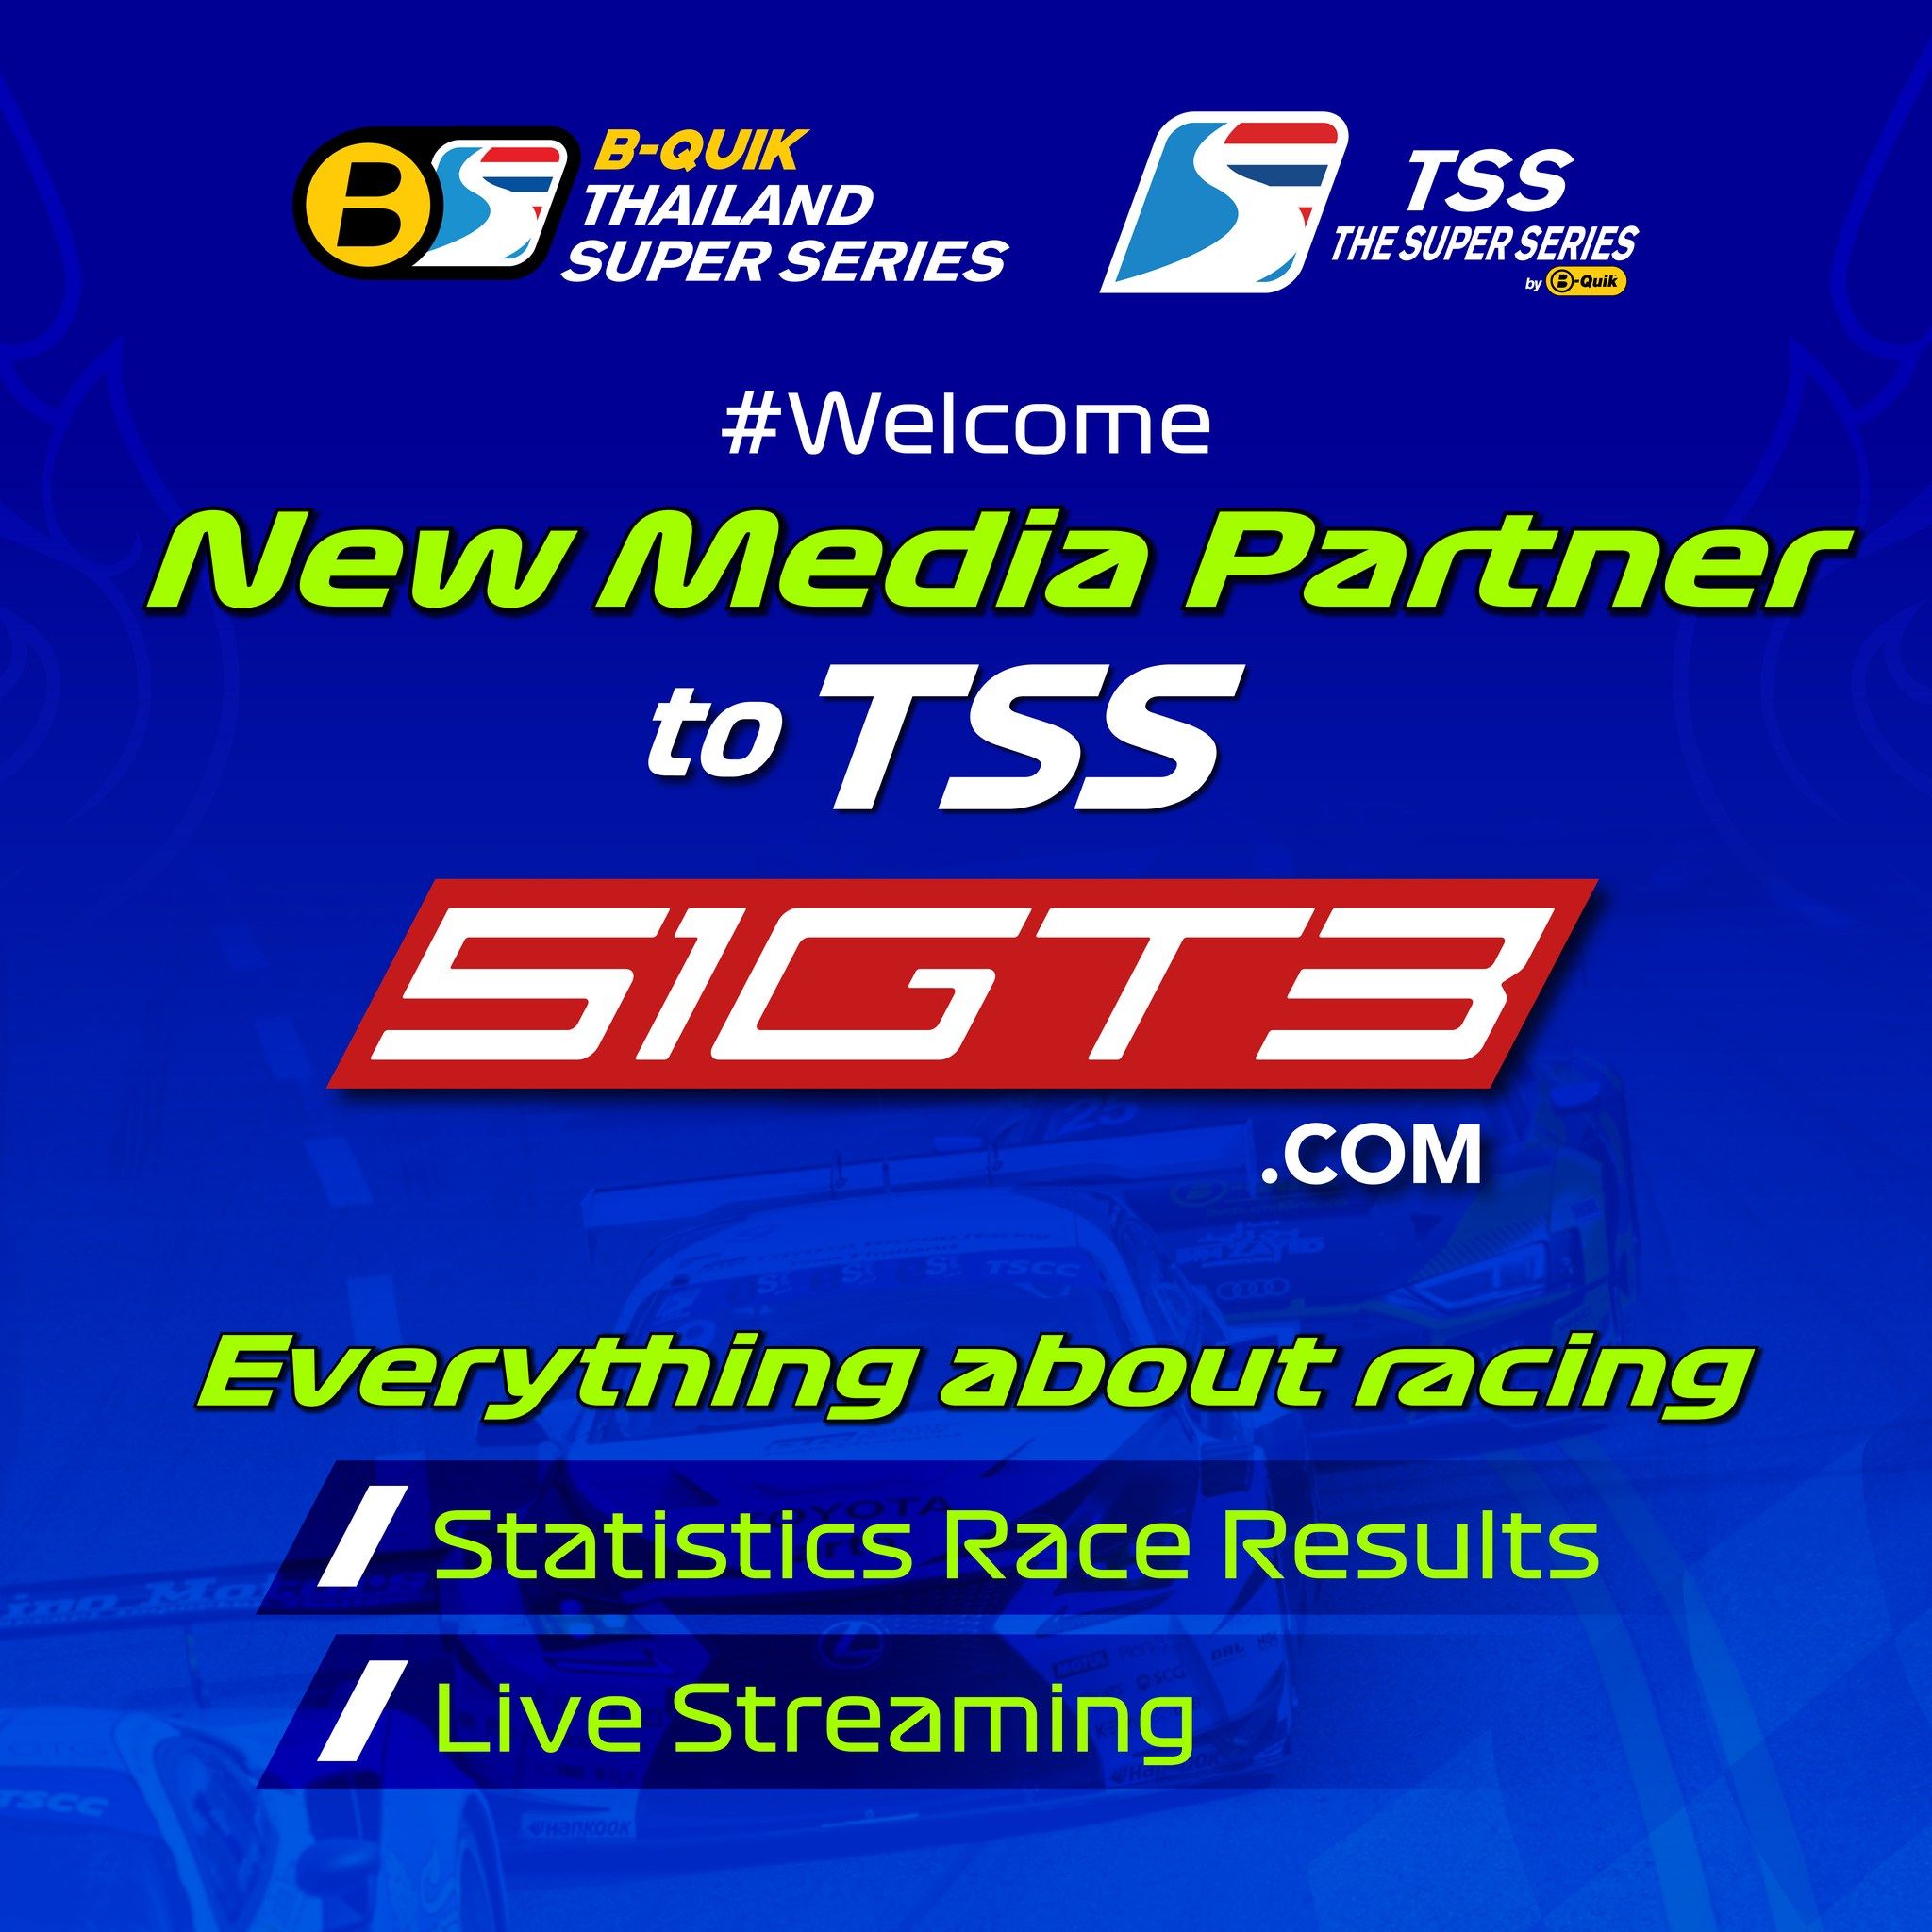 Begrüßen Sie den neuen Medienpartner bei TSS - 51GT3.com